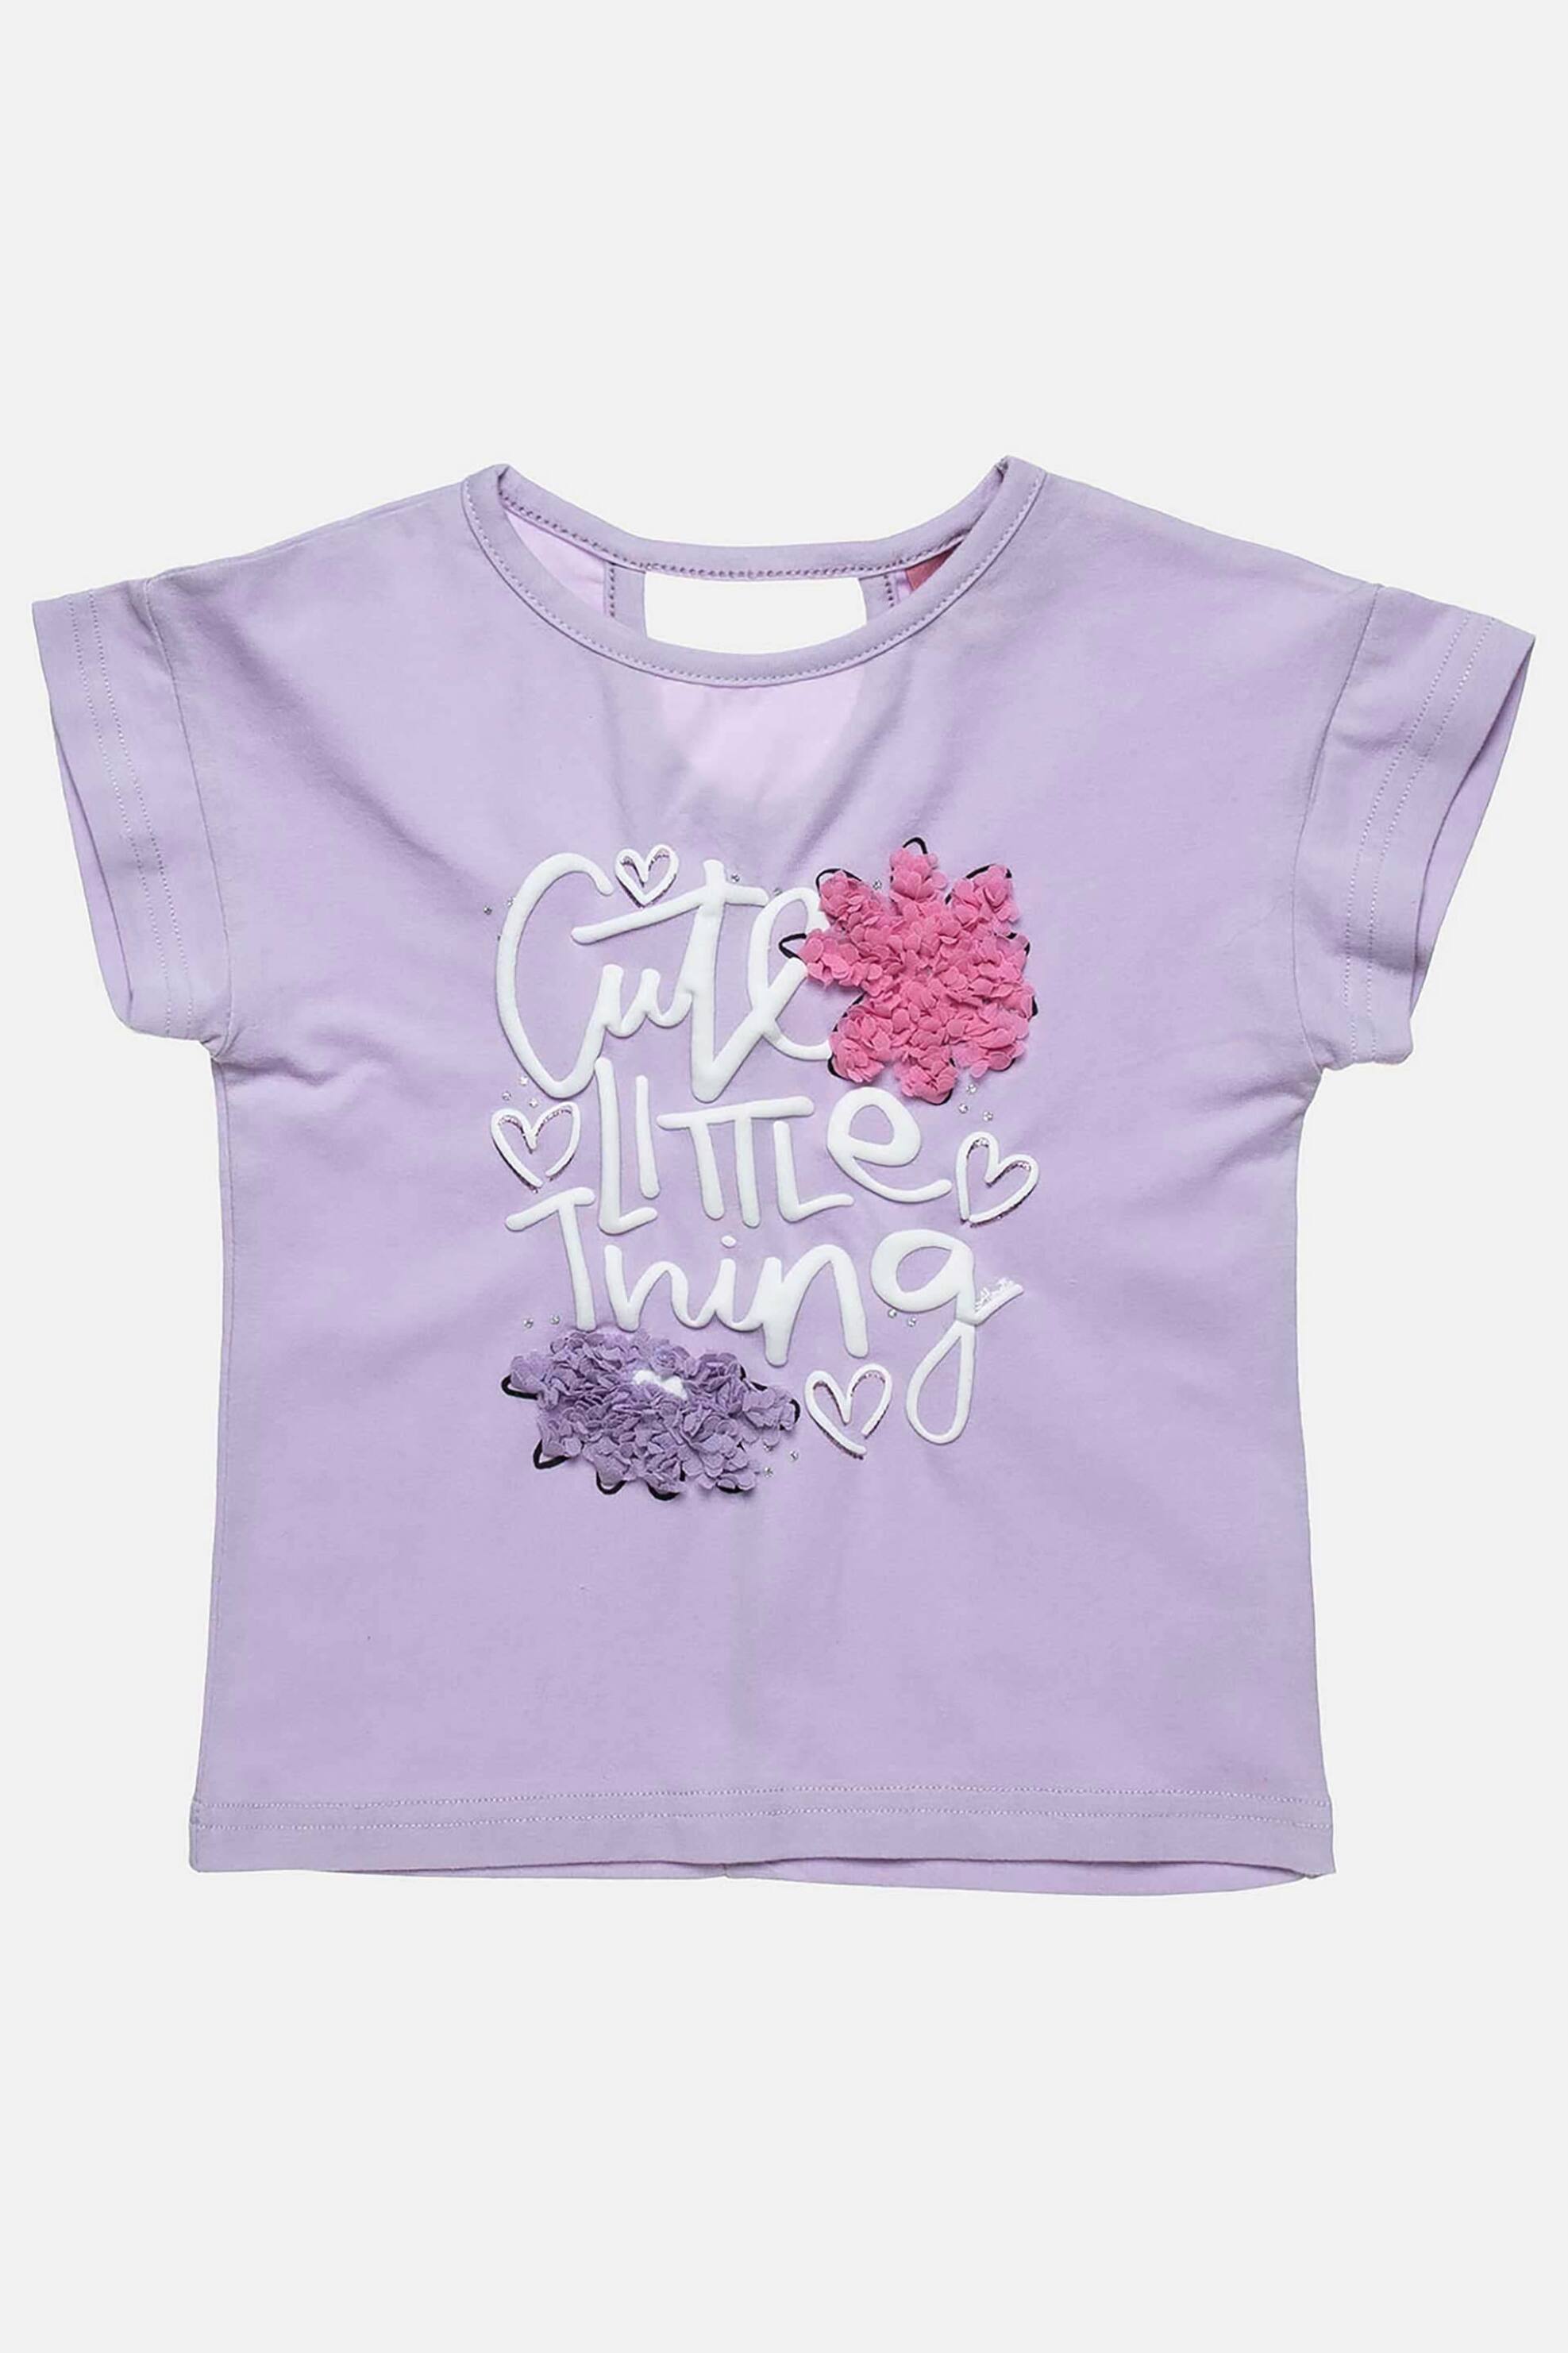 Παιδικά Ρούχα, Παπούτσια & Παιχνίδια > Παιδικά Ρούχα & Αξεσουάρ για Κορίτσια > Παιδικές Μπλούζες για Κορίτσια > Παιδικά T-Shirts για Κορίτσια Alouette παιδικό T-shirt με ανάγλυφα γκοφρέ λουλούδια - 00251546 Λιλά